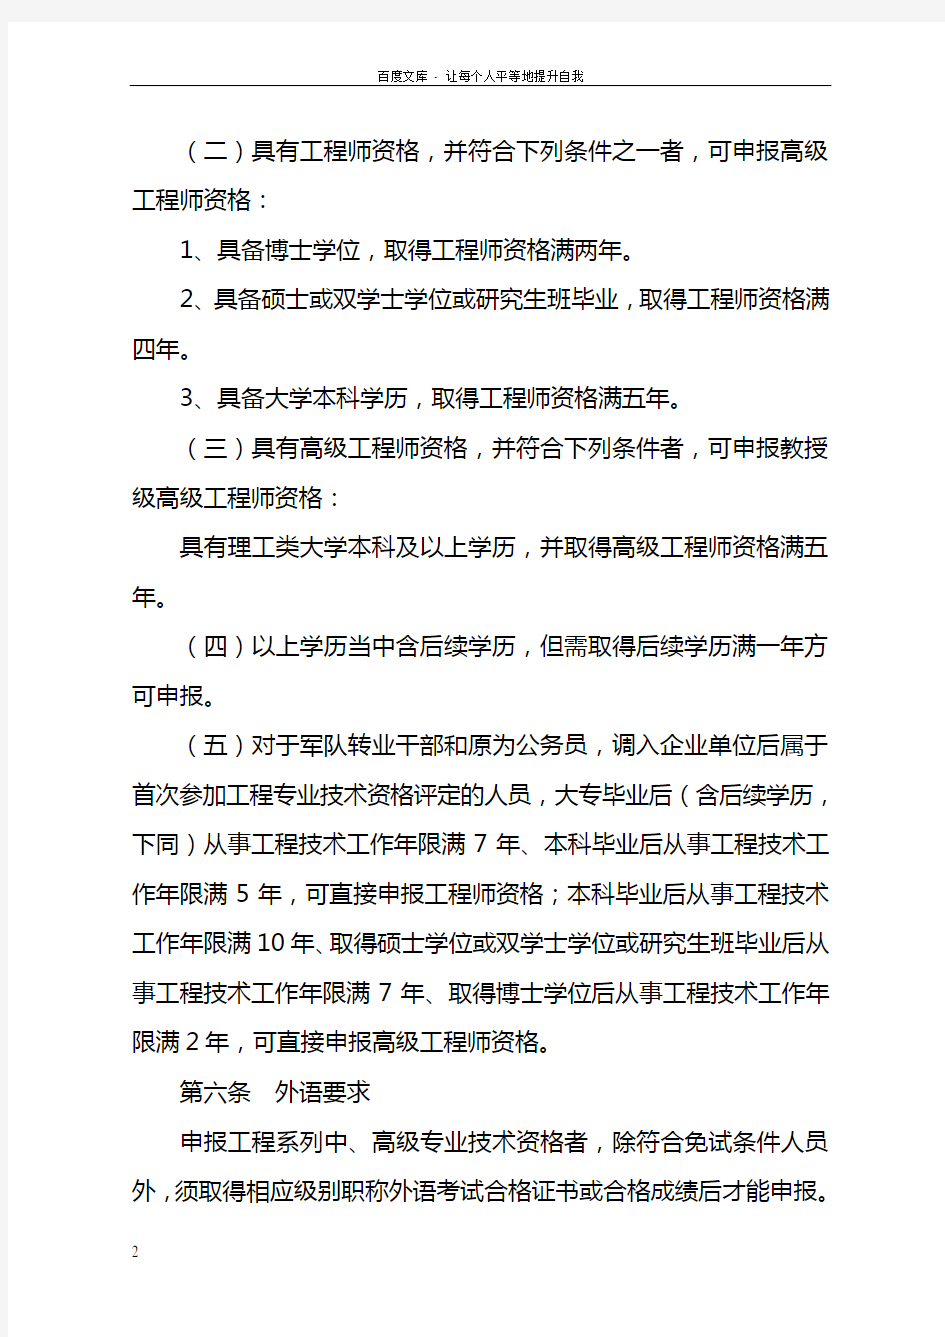 中国水利水电建设集团公司工程系列专业技术资格评审实施细则(修订)